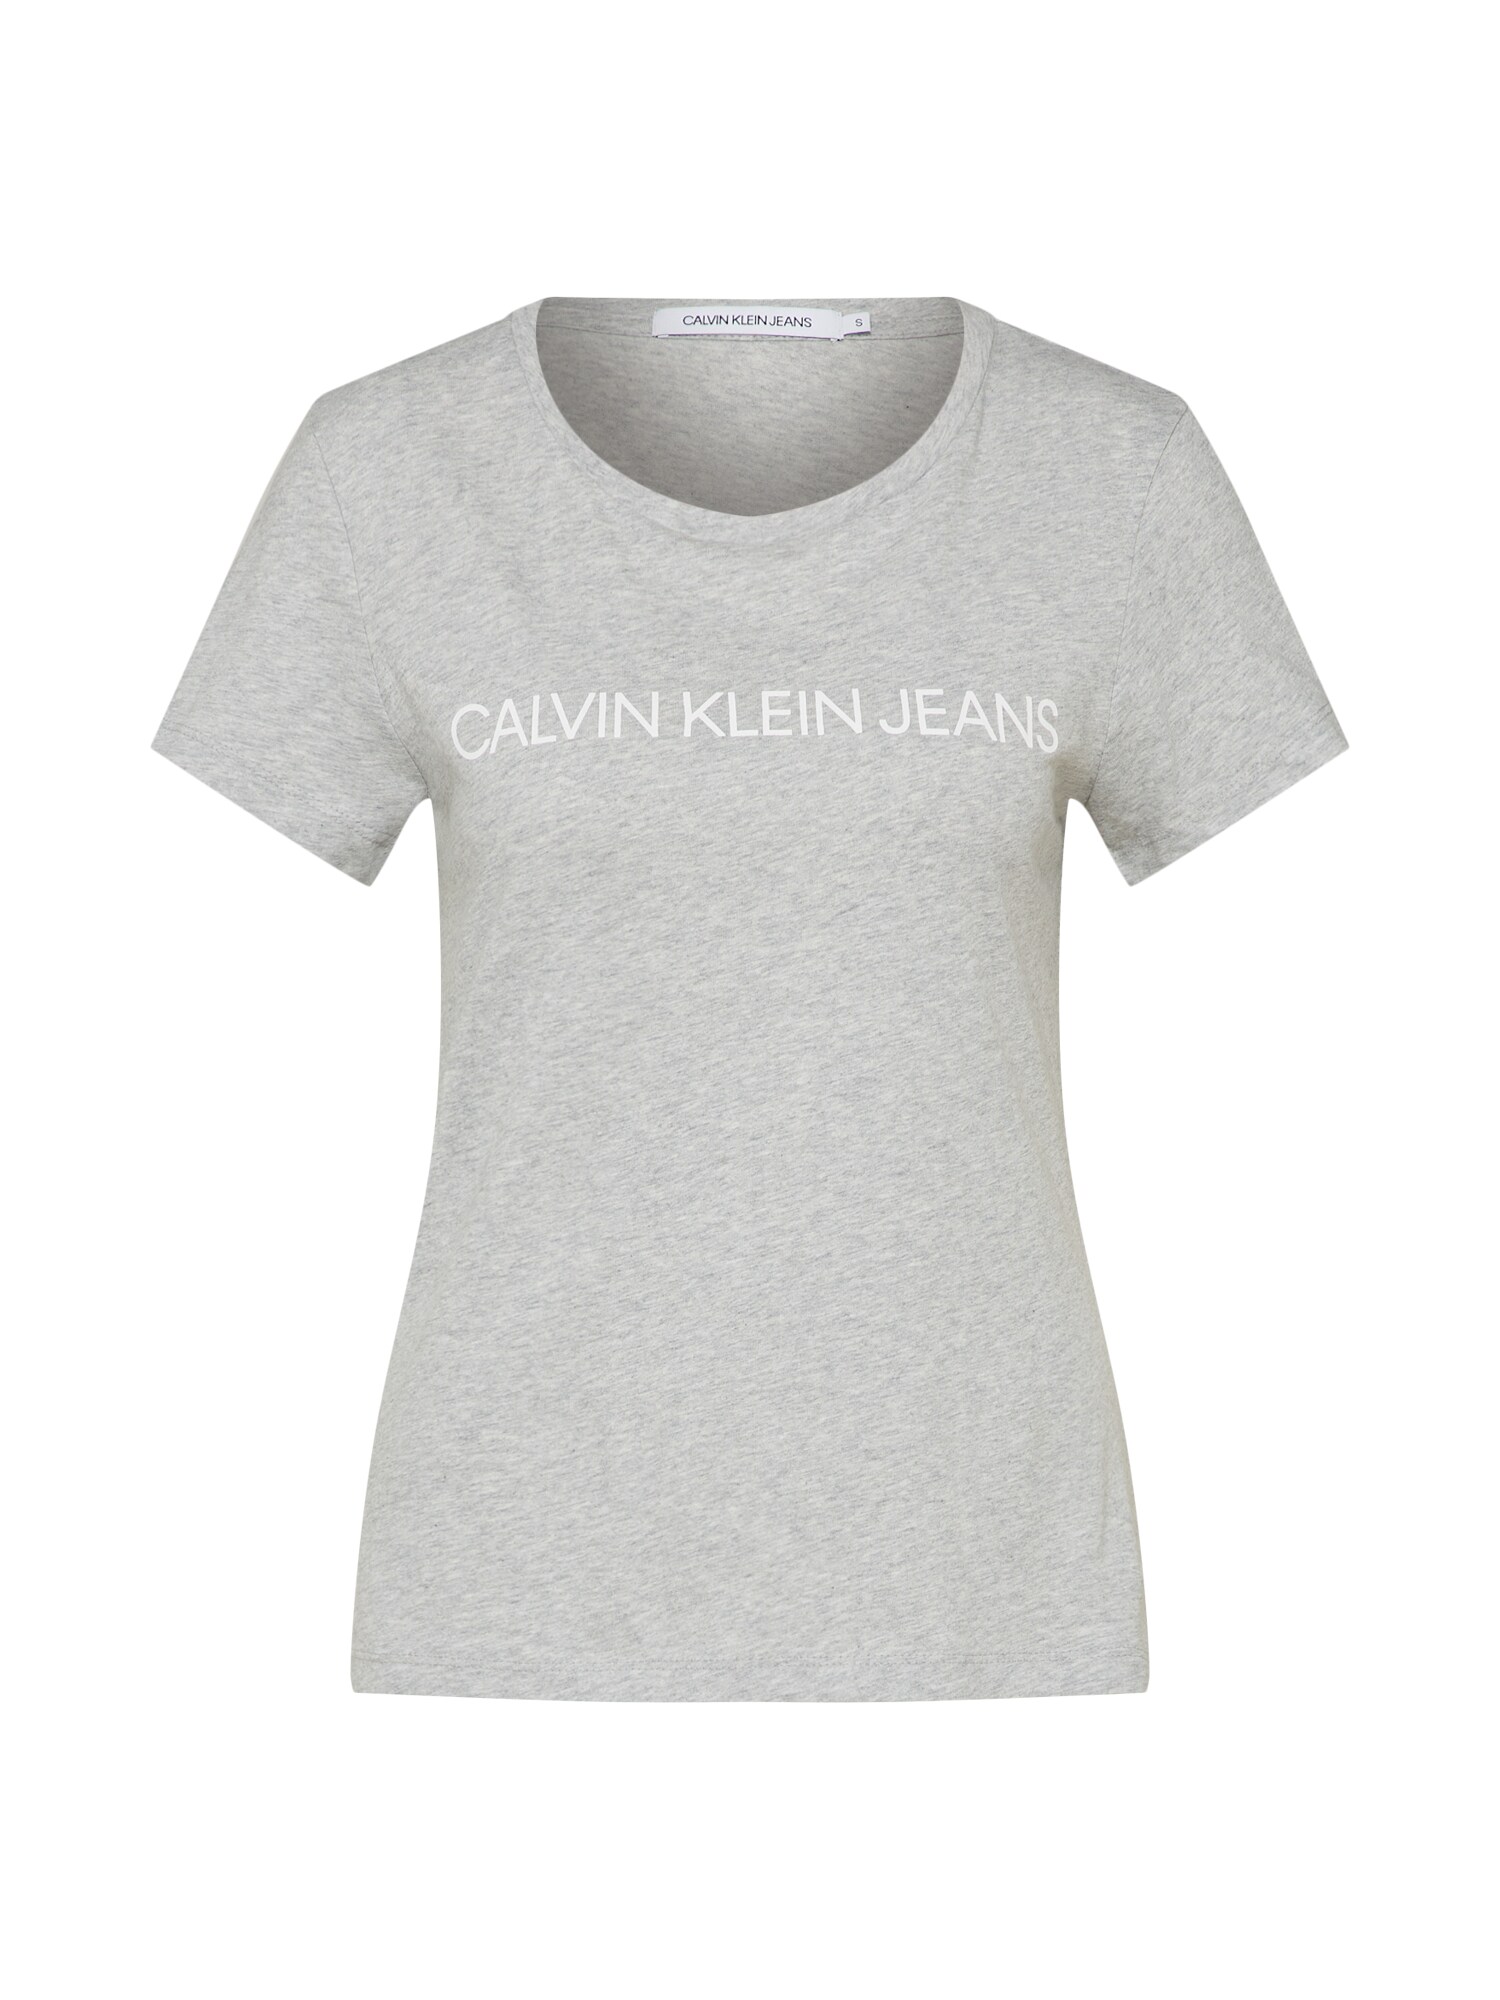 Calvin Klein Jeans Marškinėliai 'INSTITUTIONAL LOGO'  balta / šviesiai pilka